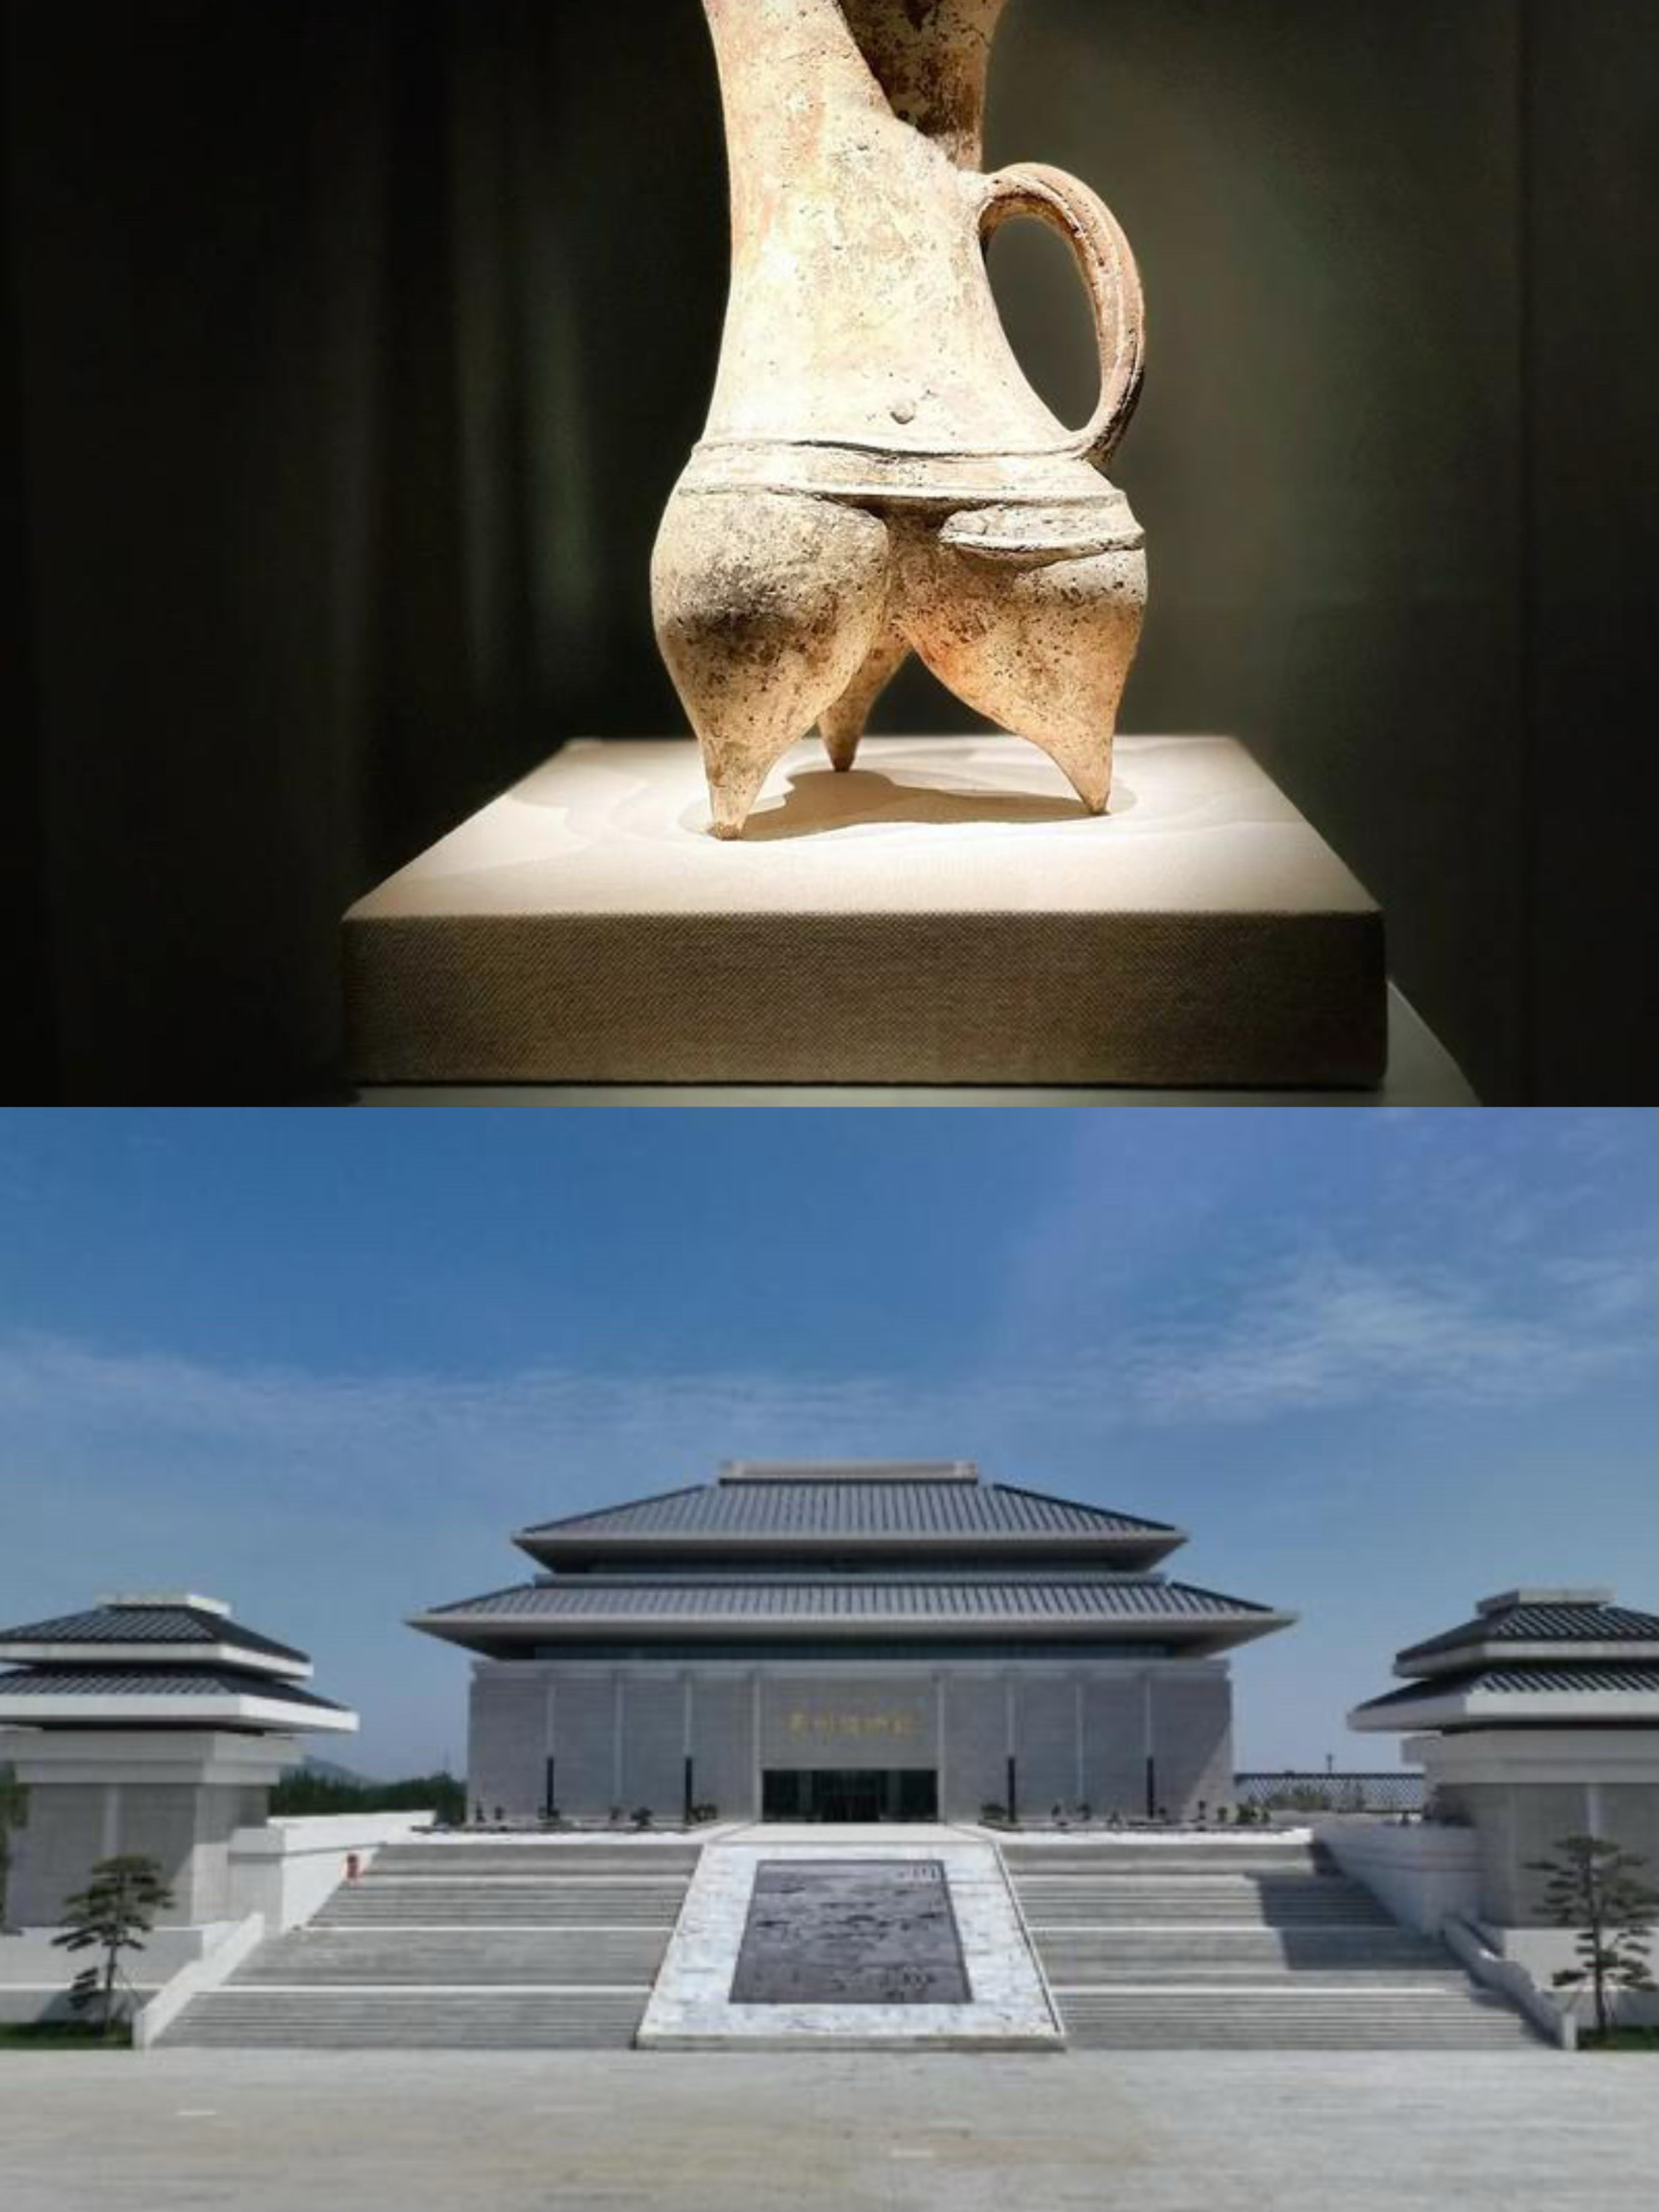 青州博物馆旅游攻略